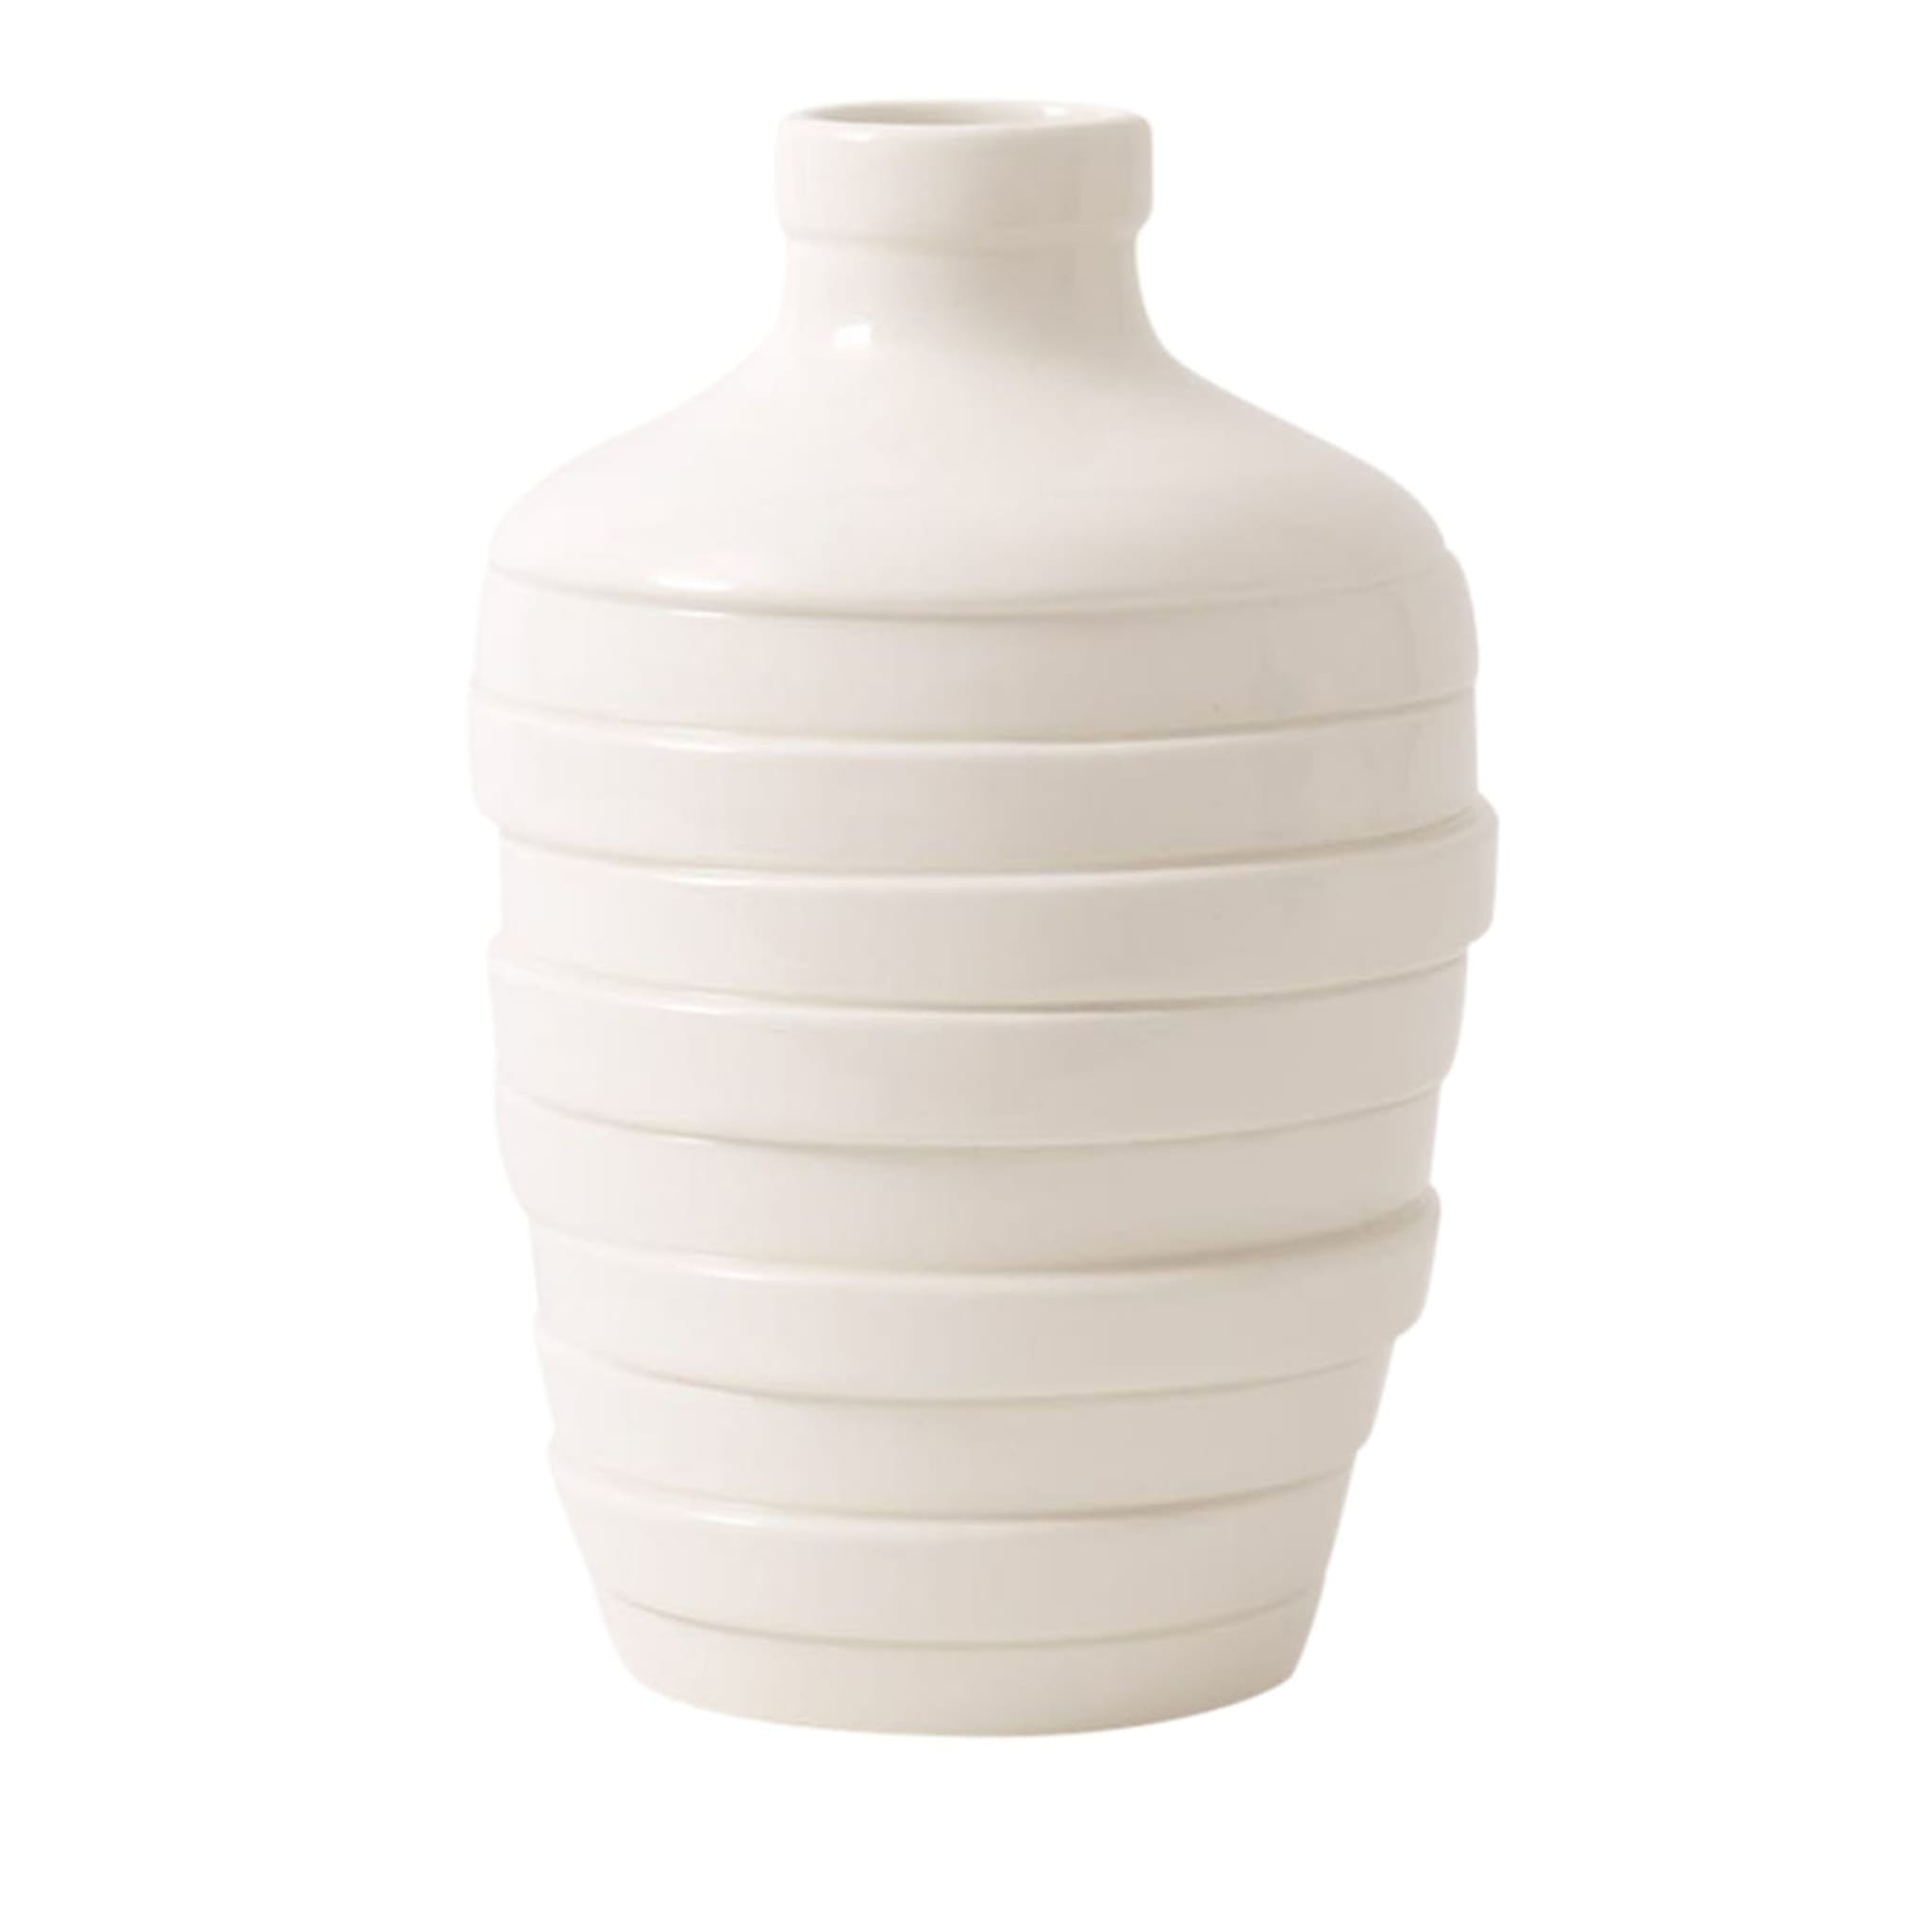 Grand vase blanc Gioia - Vue principale